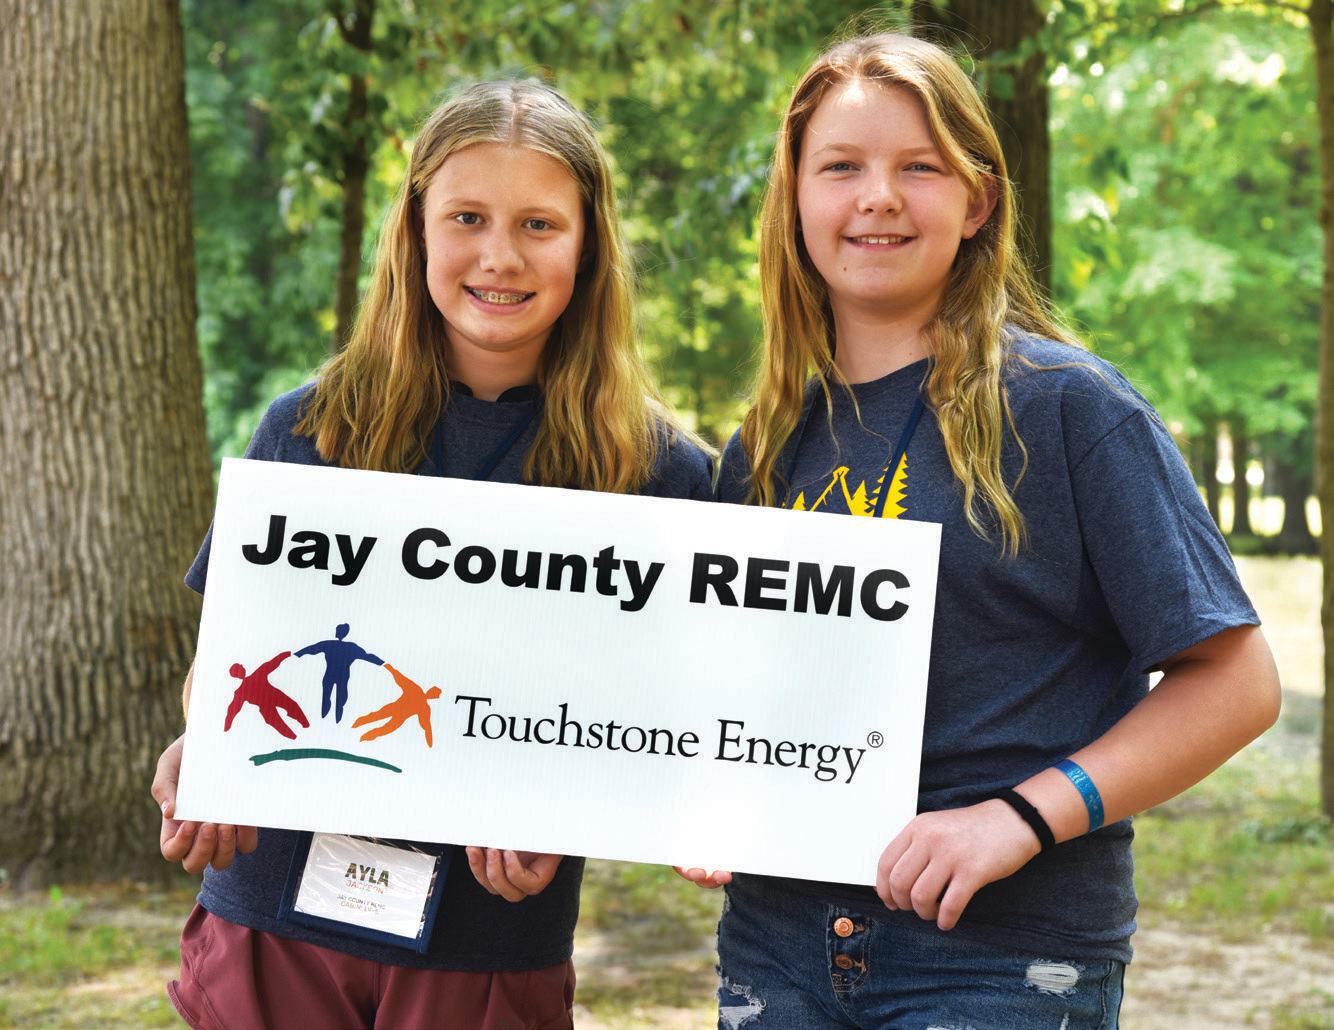 Jay County REMC’s Camp Kilowatt campers, Ayla Jackson, left, and Alexa Ridenour.